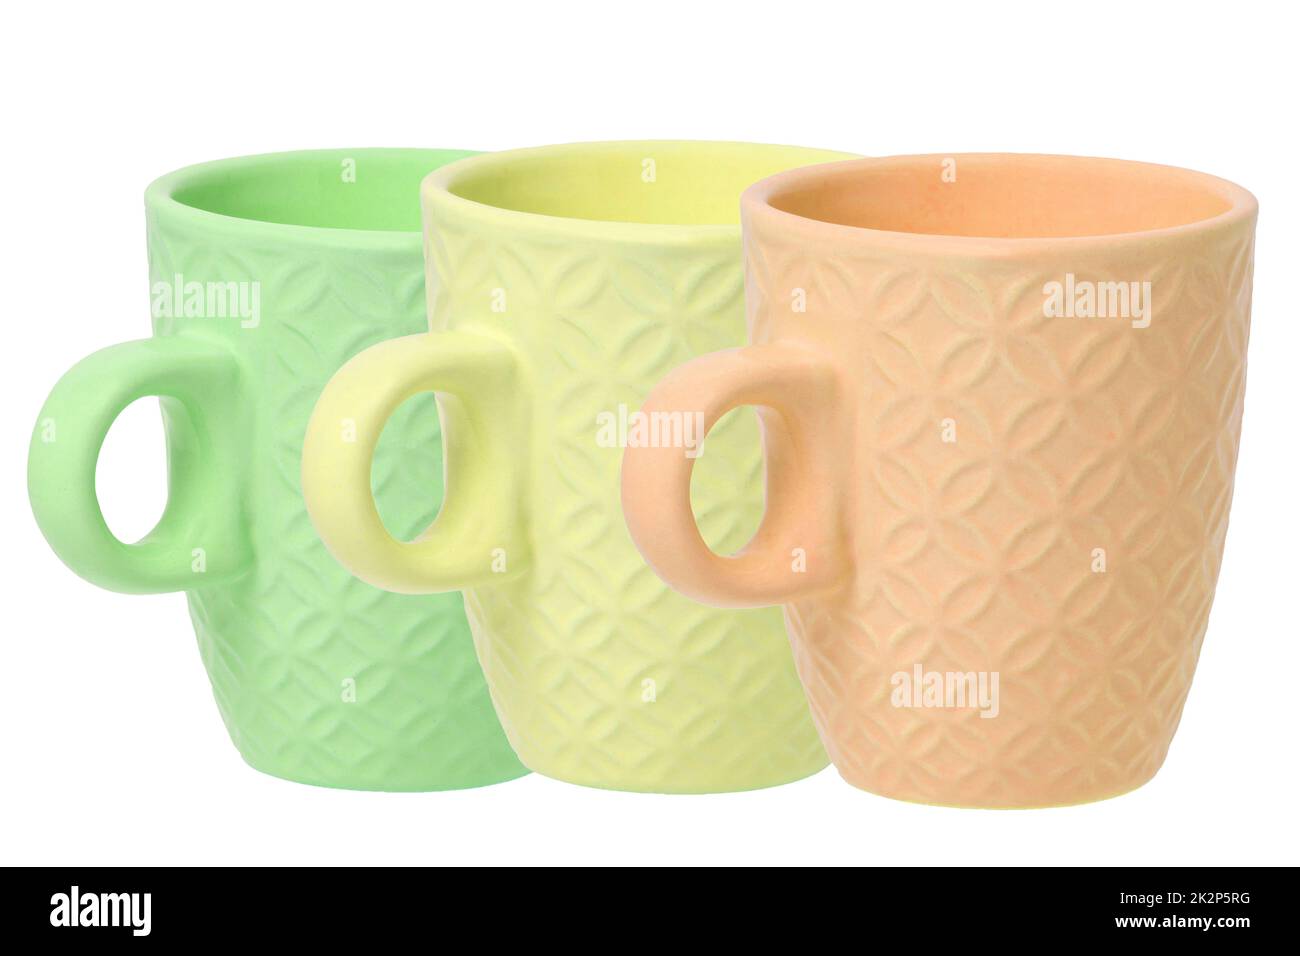 Tazza di caffè. Primo piano di tre tazze in ceramica vuote verdi, gialle e arancioni con spazio per l'etichetta isolato su sfondo bianco. Caffè mattutino concept. Spazio. Macro. Foto Stock